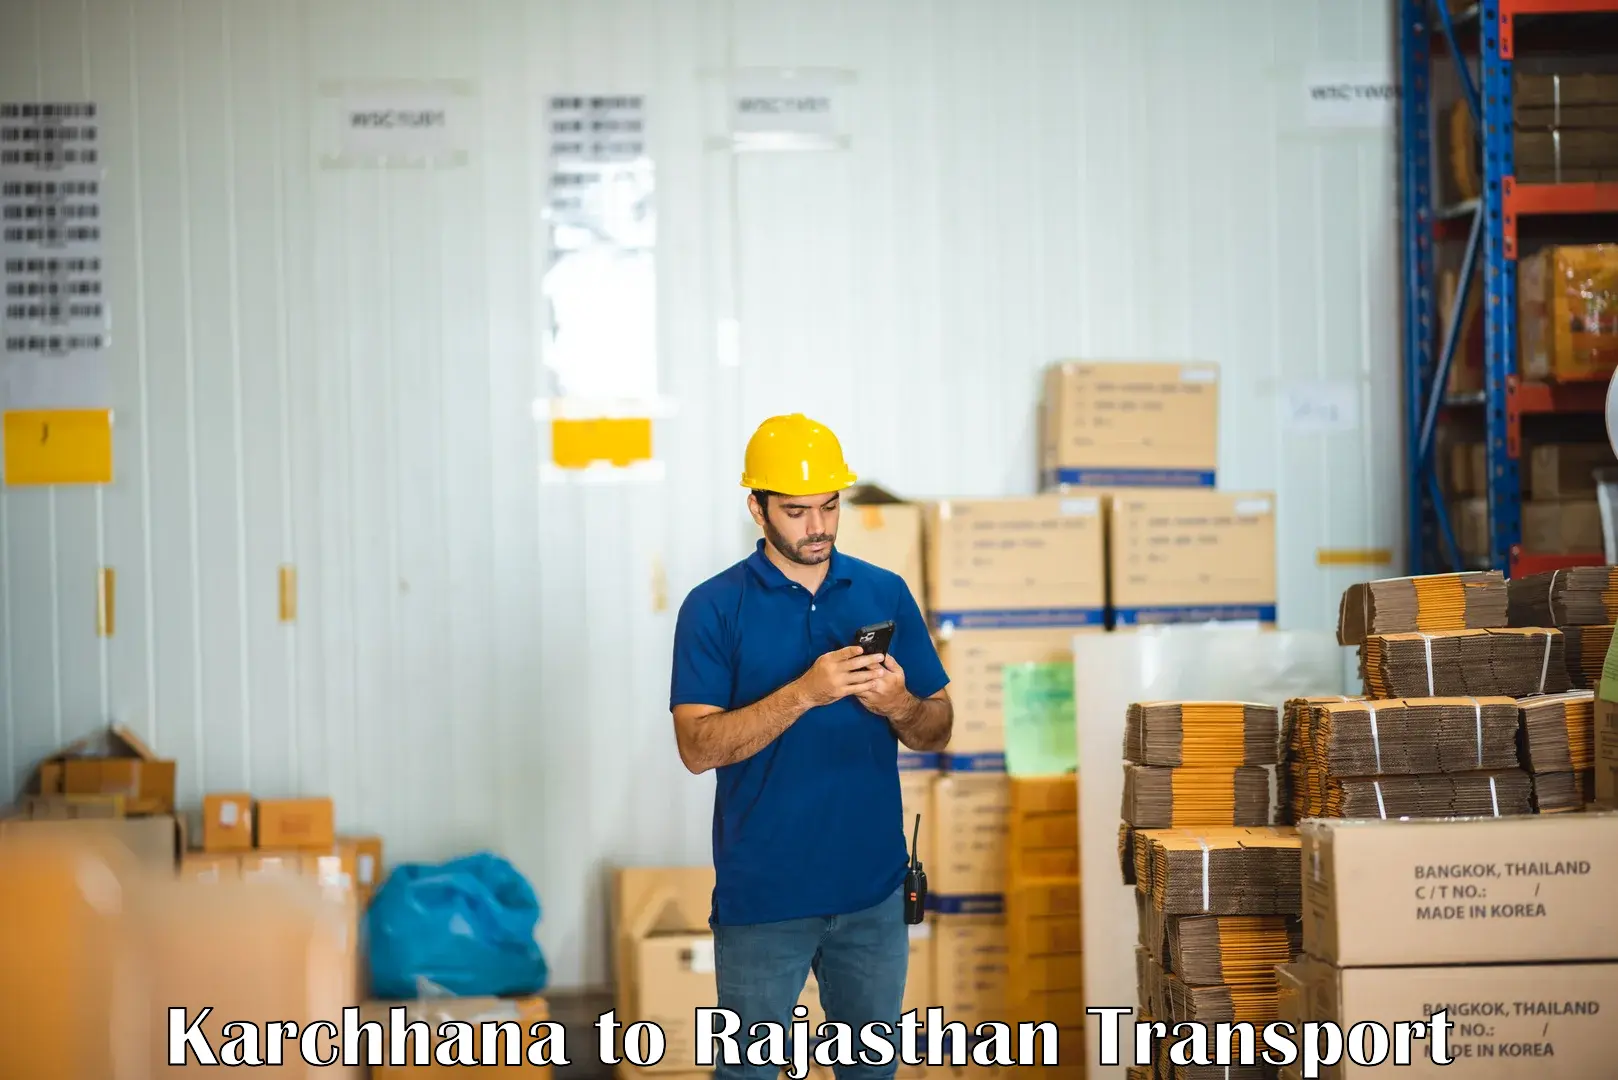 Furniture transport service Karchhana to Rajasthan